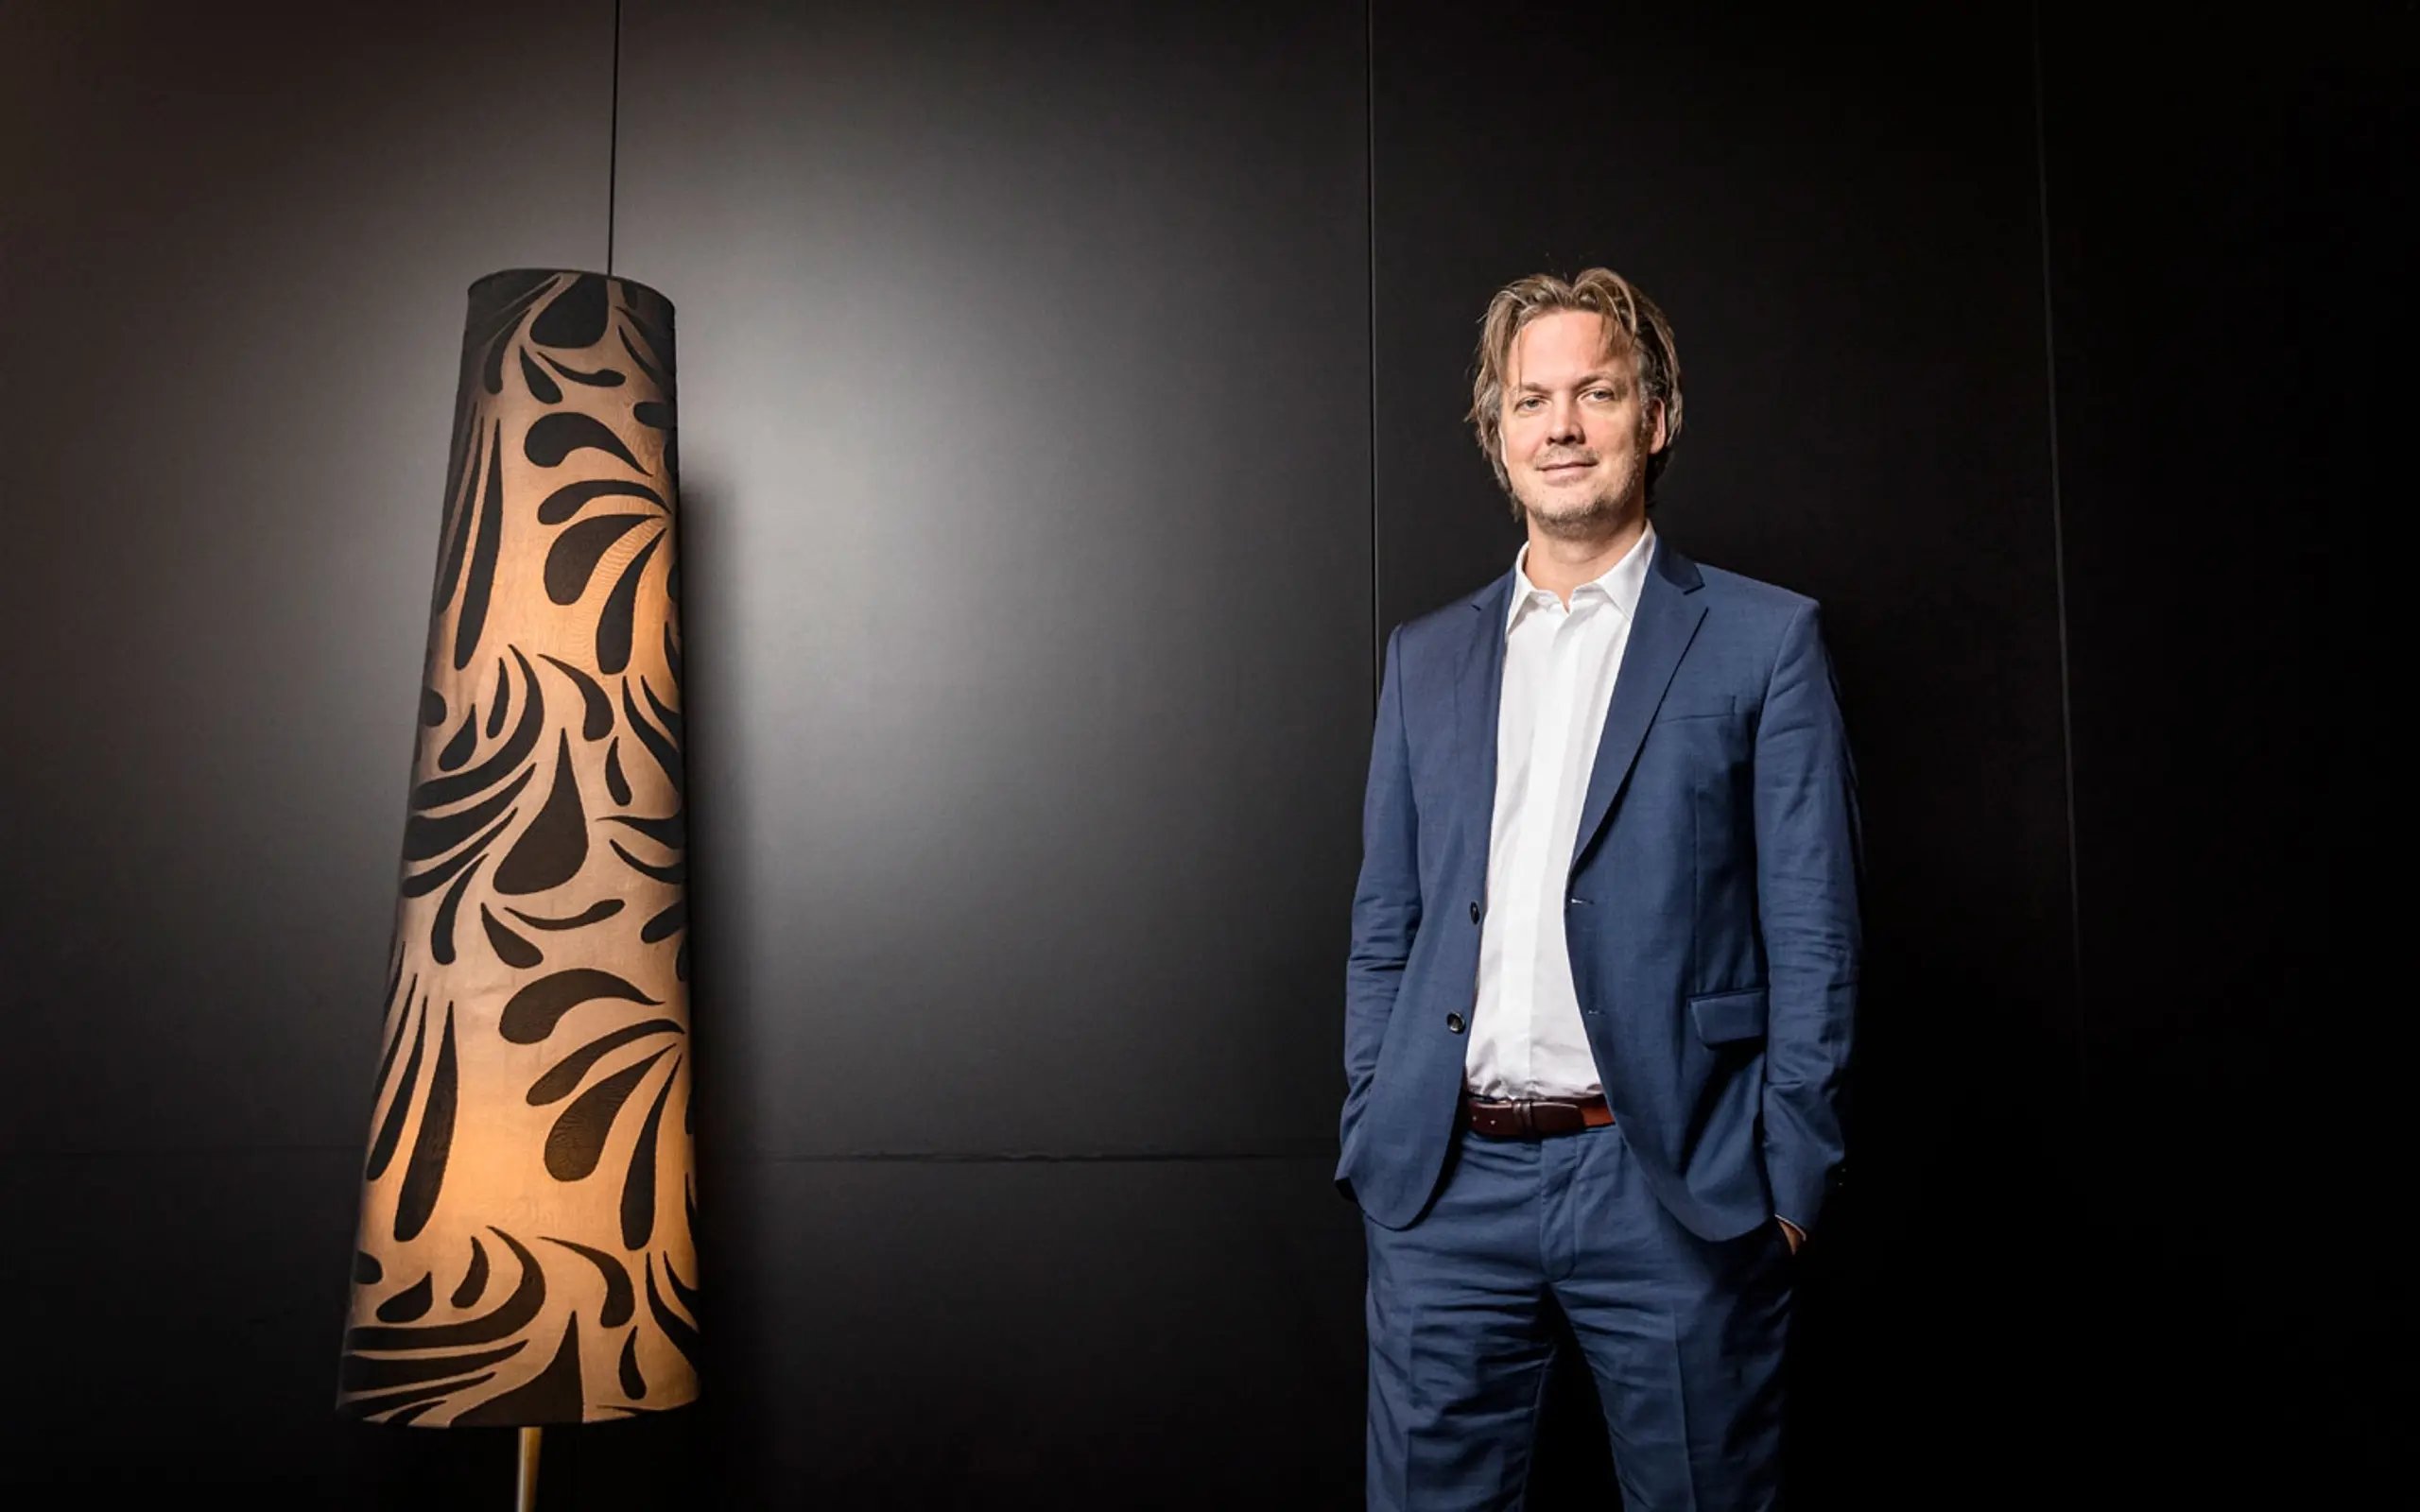 Start-up Investor Markus Wagner: "Jetzt sucht jeder panisch Geld"